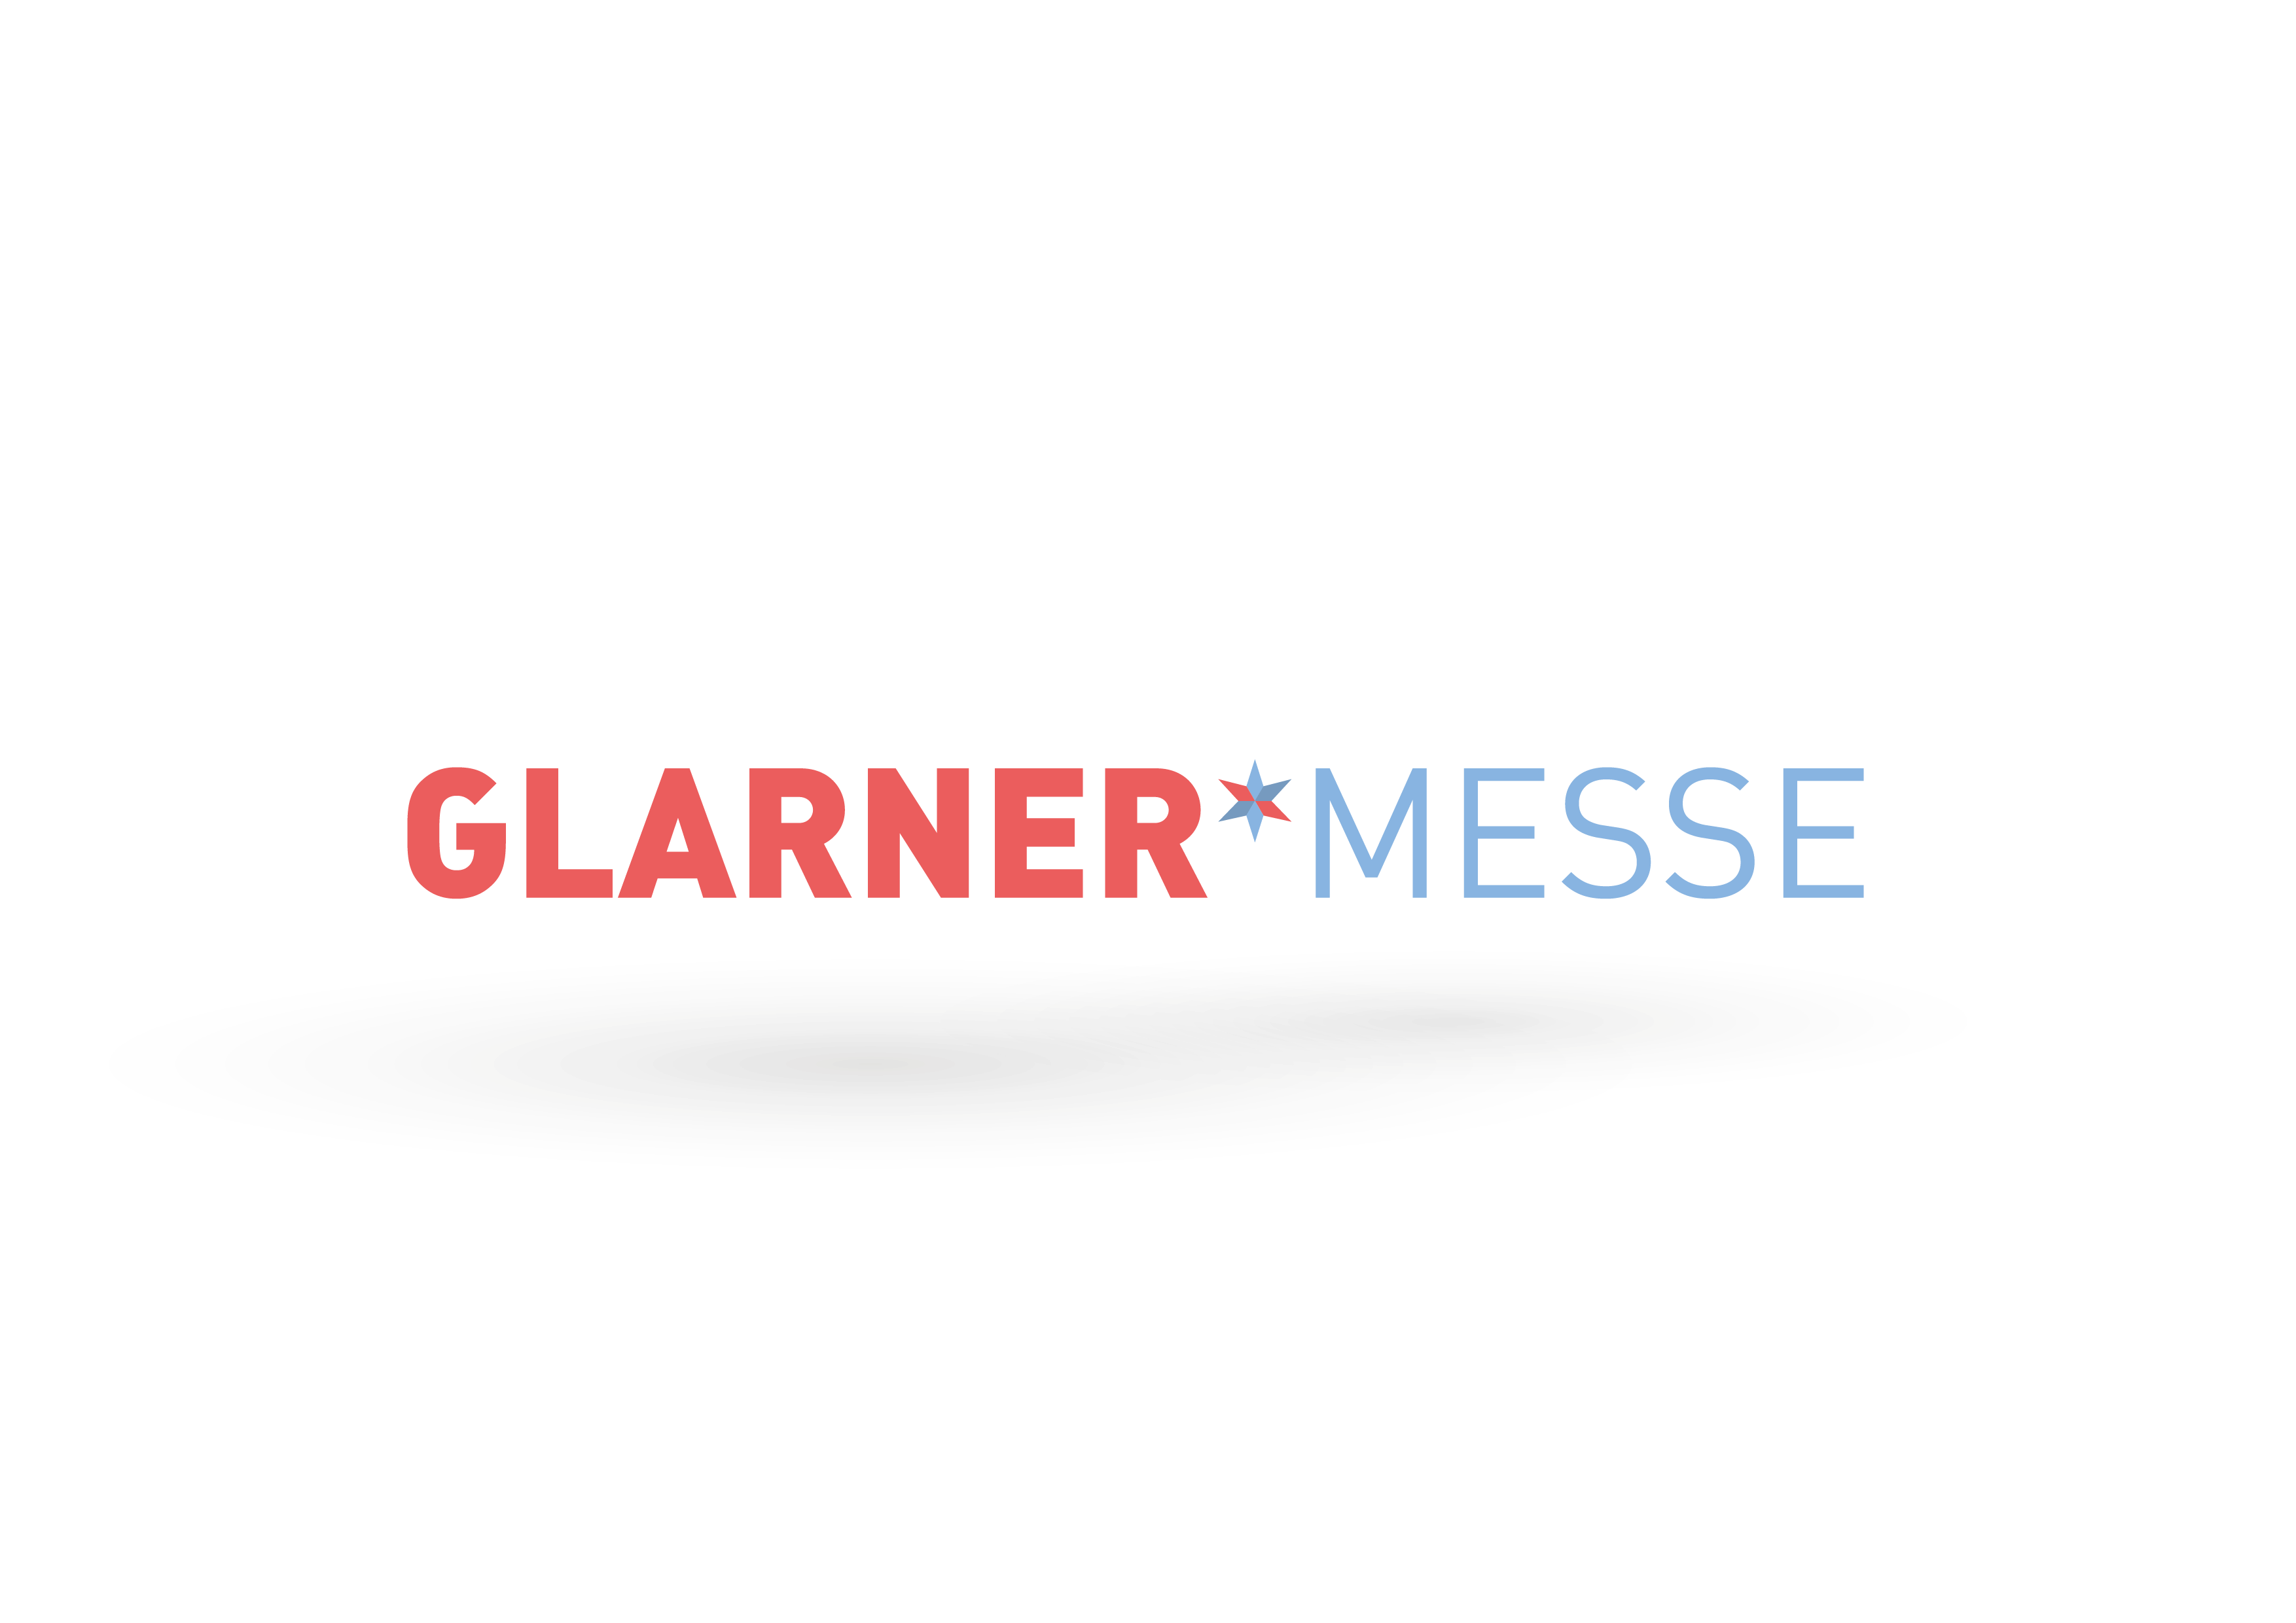 Glarner Messe (28.10. - 1.11.2022)